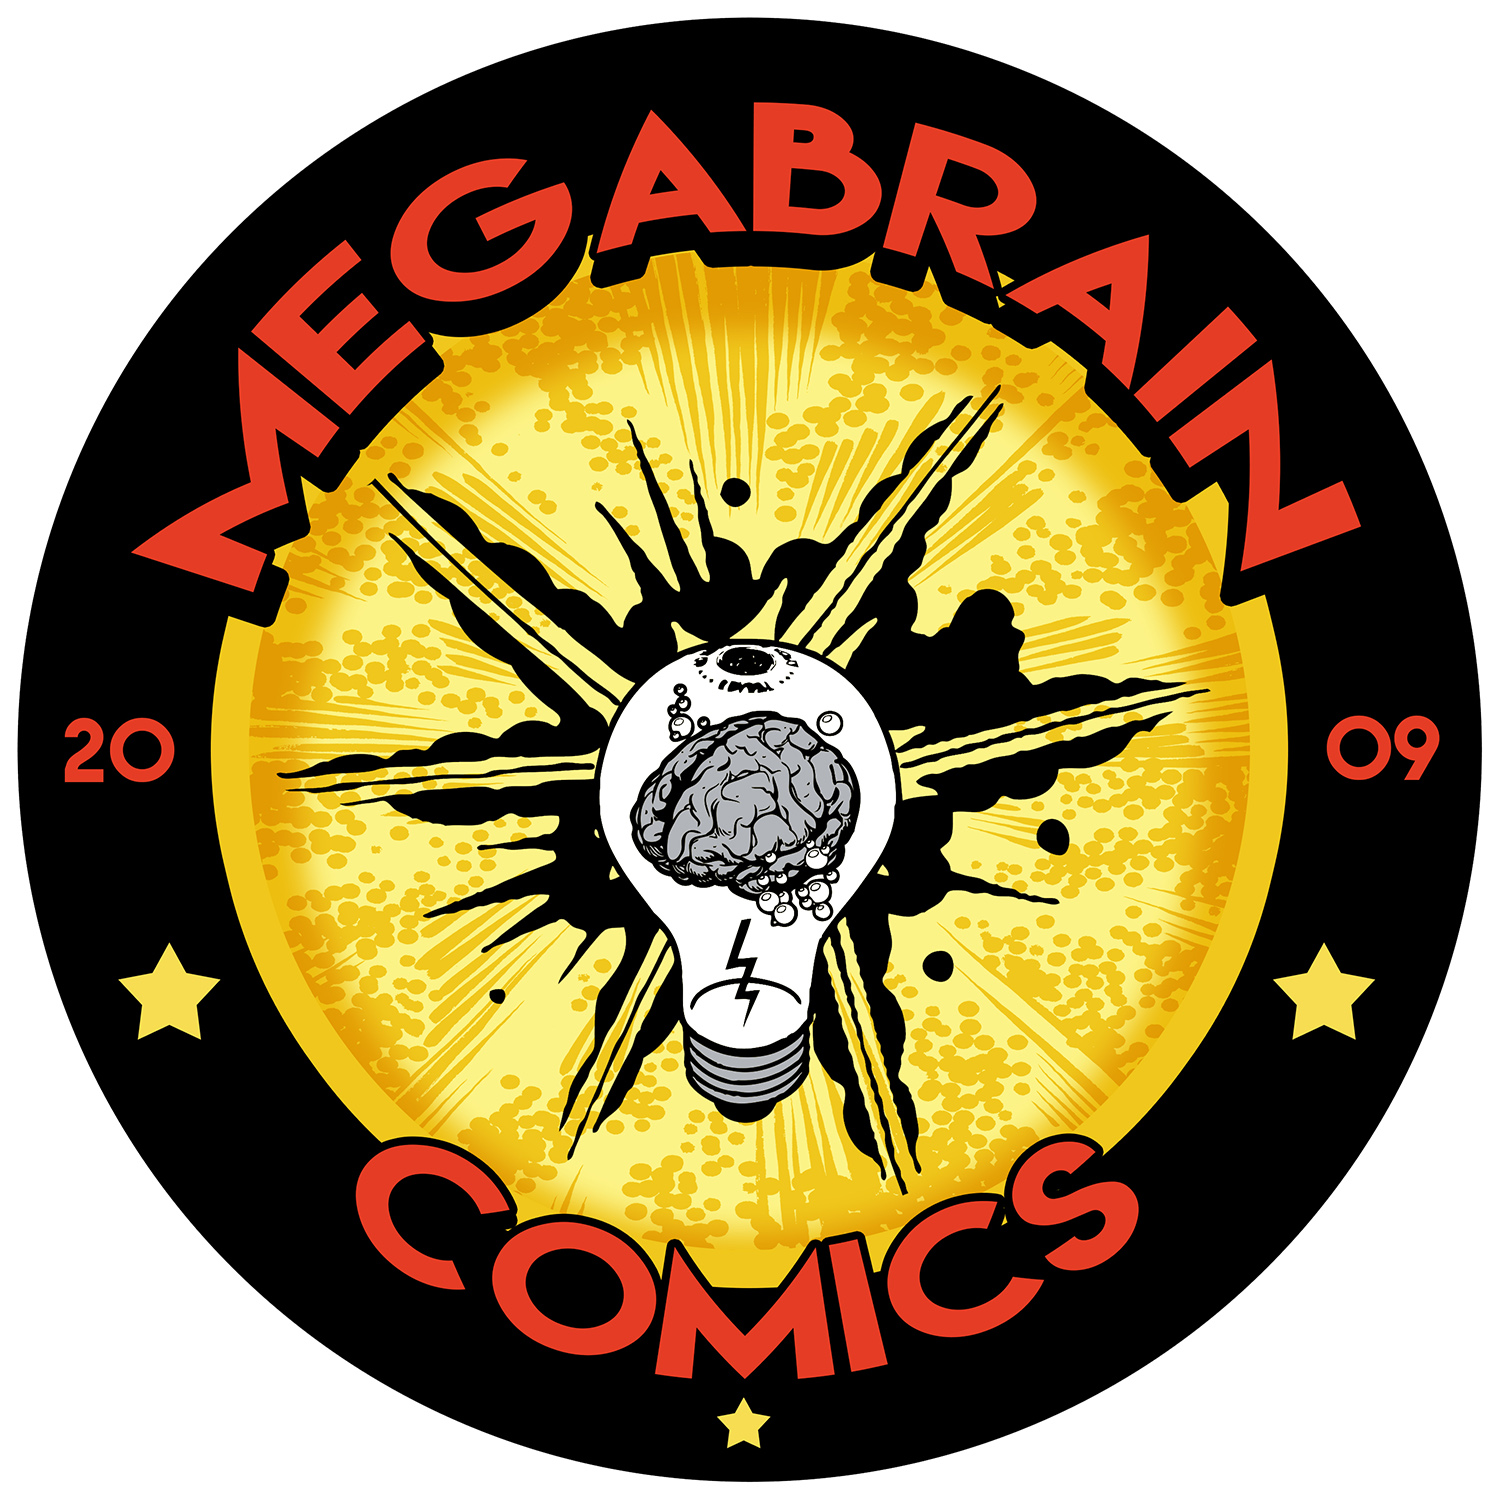 MEGABRAIN COMICS